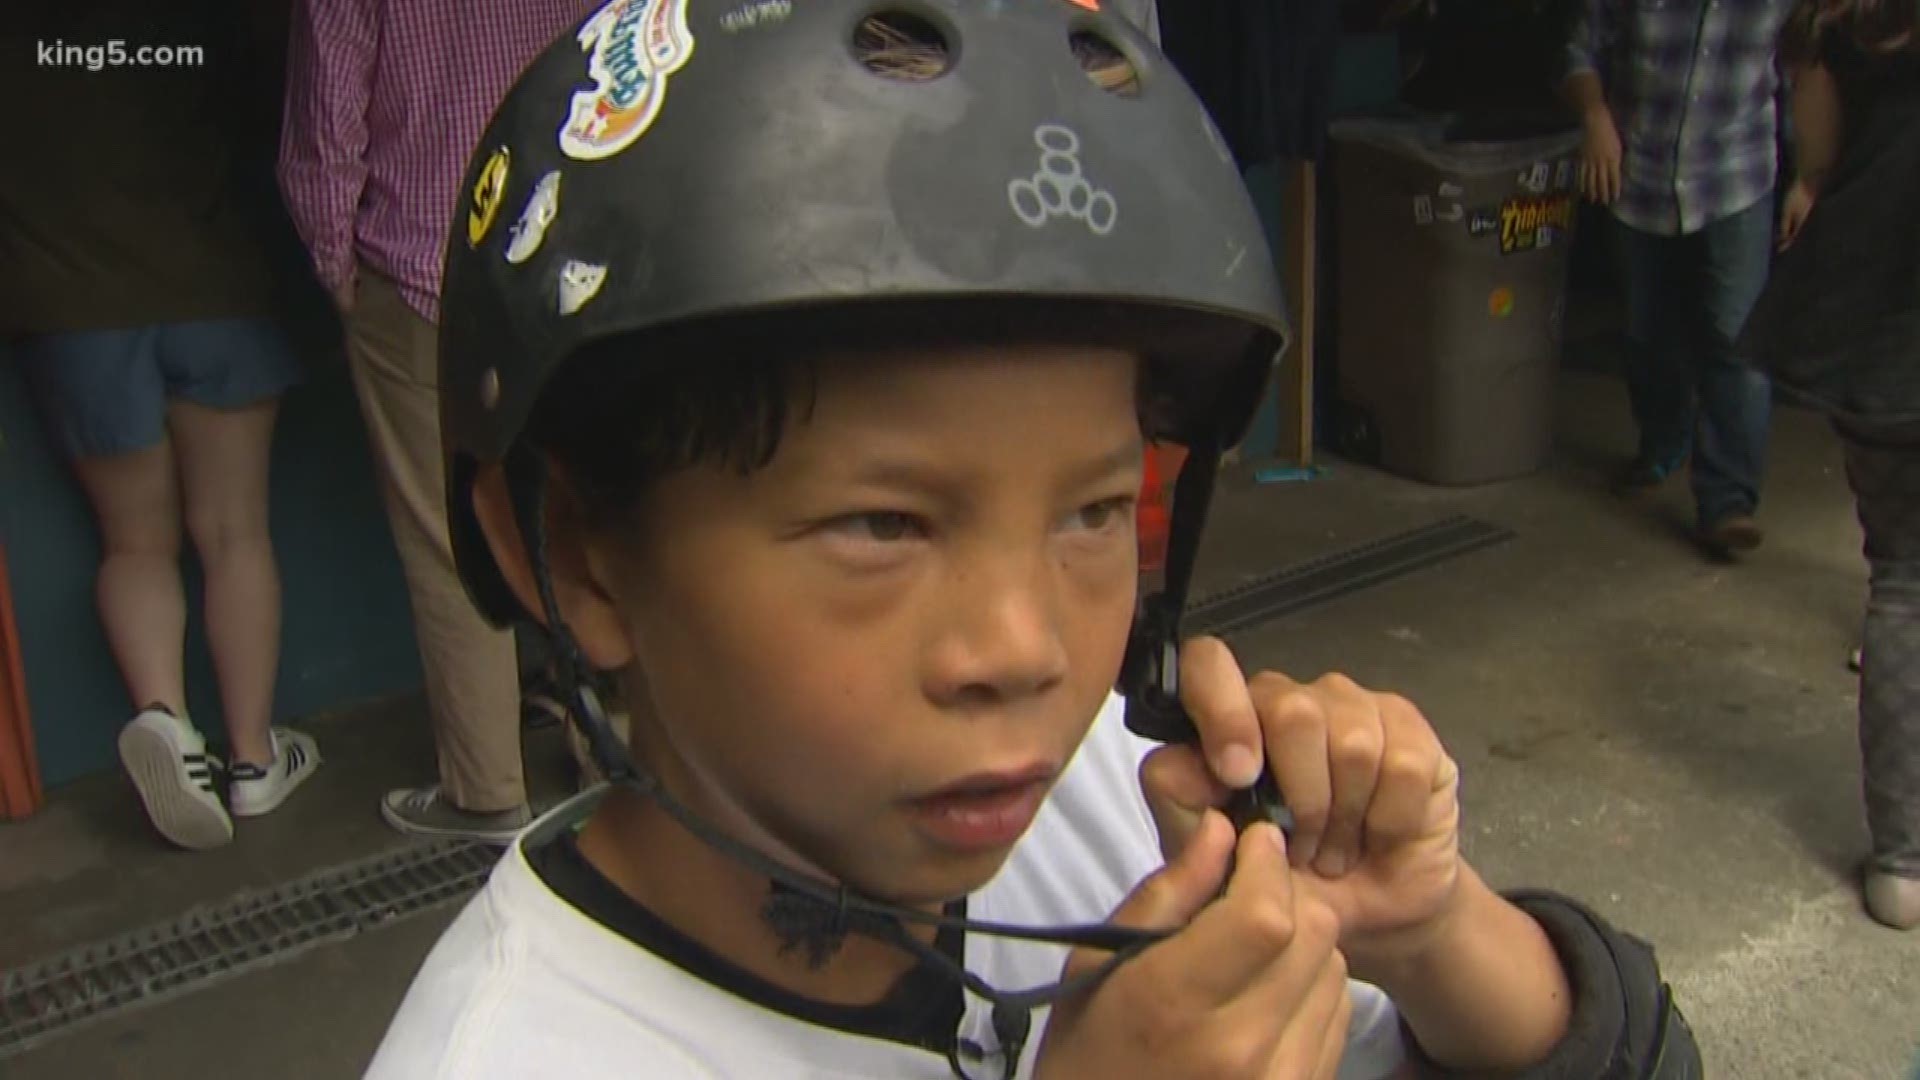 Aidan Schellings, 19, wasn't wearing a helmet when he fractured his skull while skateboarding in Seattle.